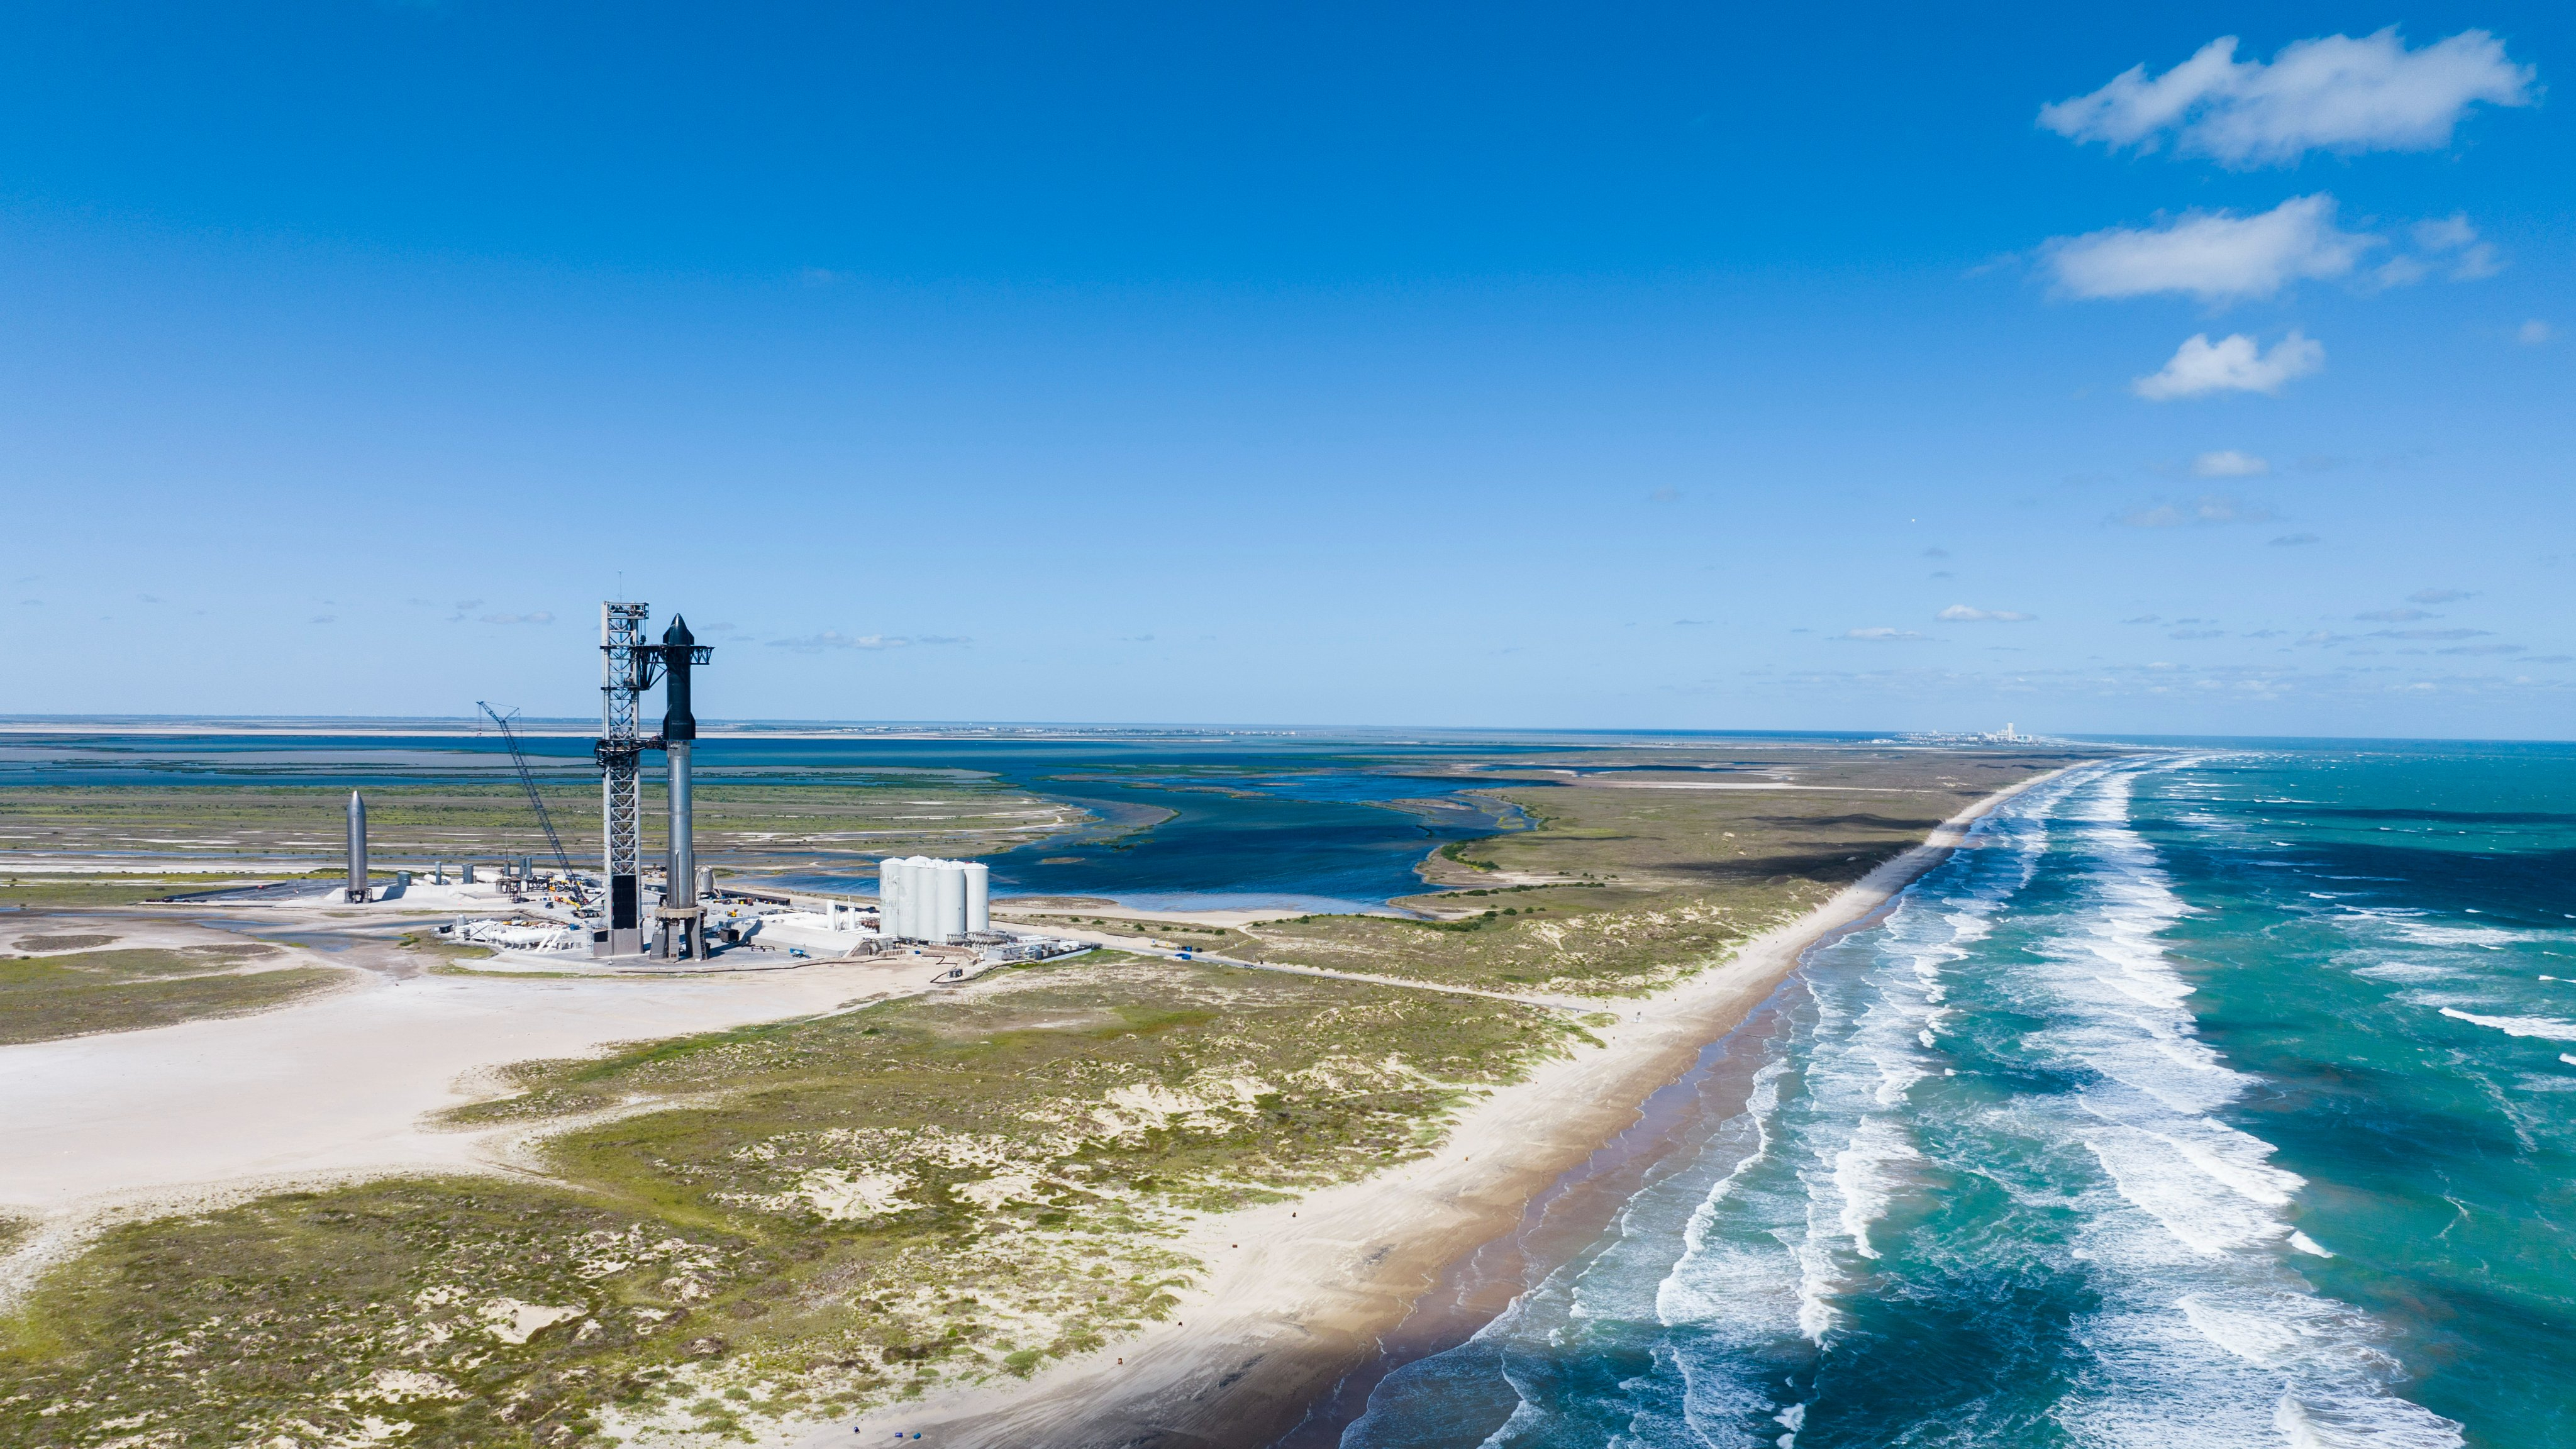 Die Edelstahl-Raumschiffrakete von SpaceX steht auf ihrer Startrampe, in der Nähe das türkisfarbene Wasser des Golfs von Mexiko.